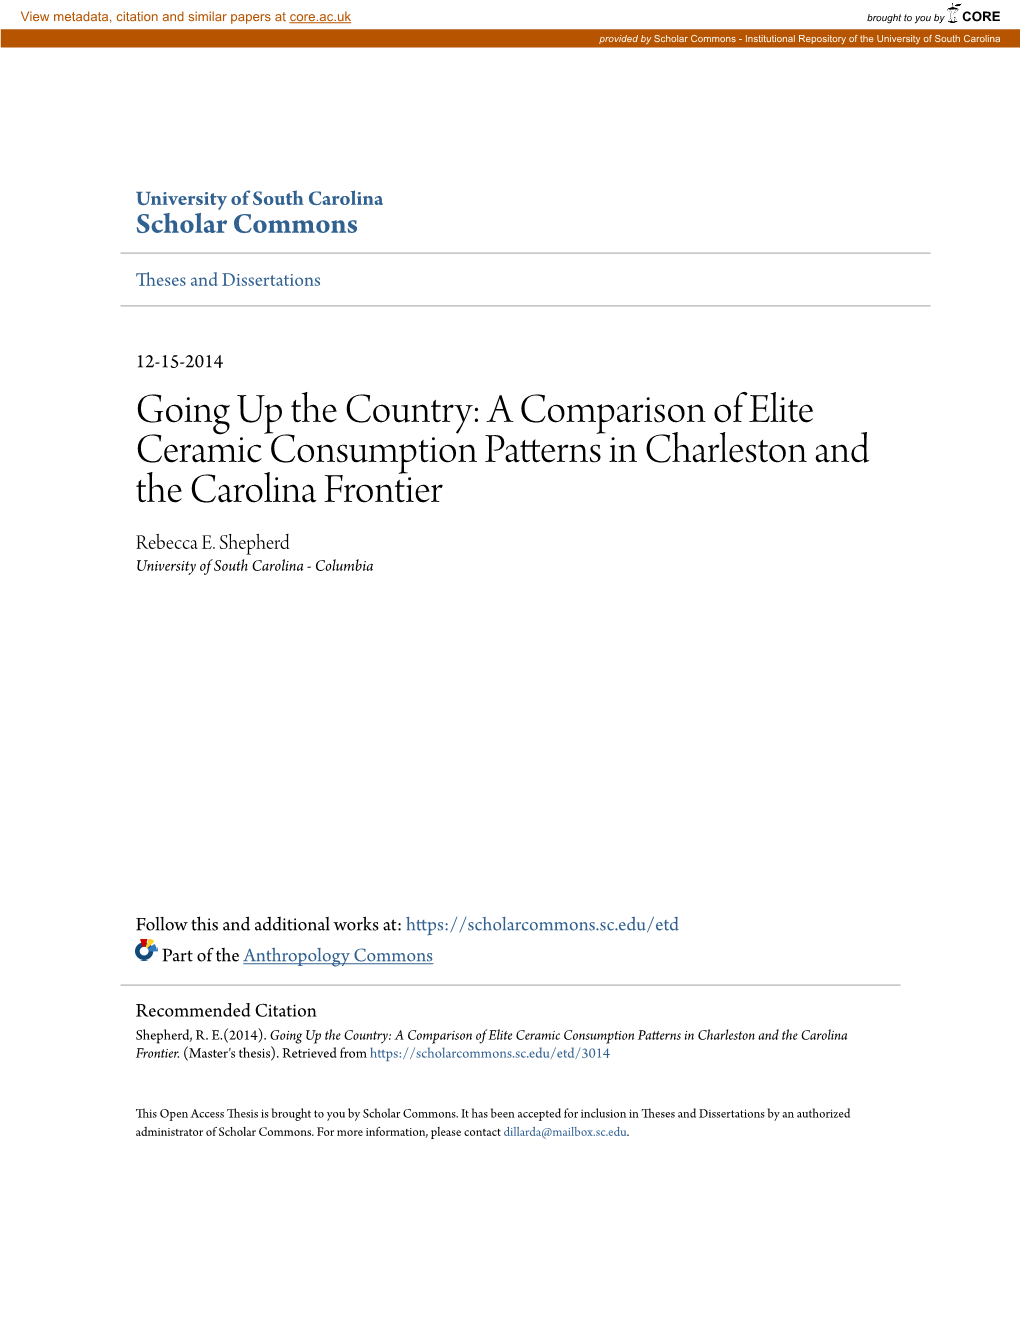 A Comparison of Elite Ceramic Consumption Patterns in Charleston and the Carolina Frontier Rebecca E